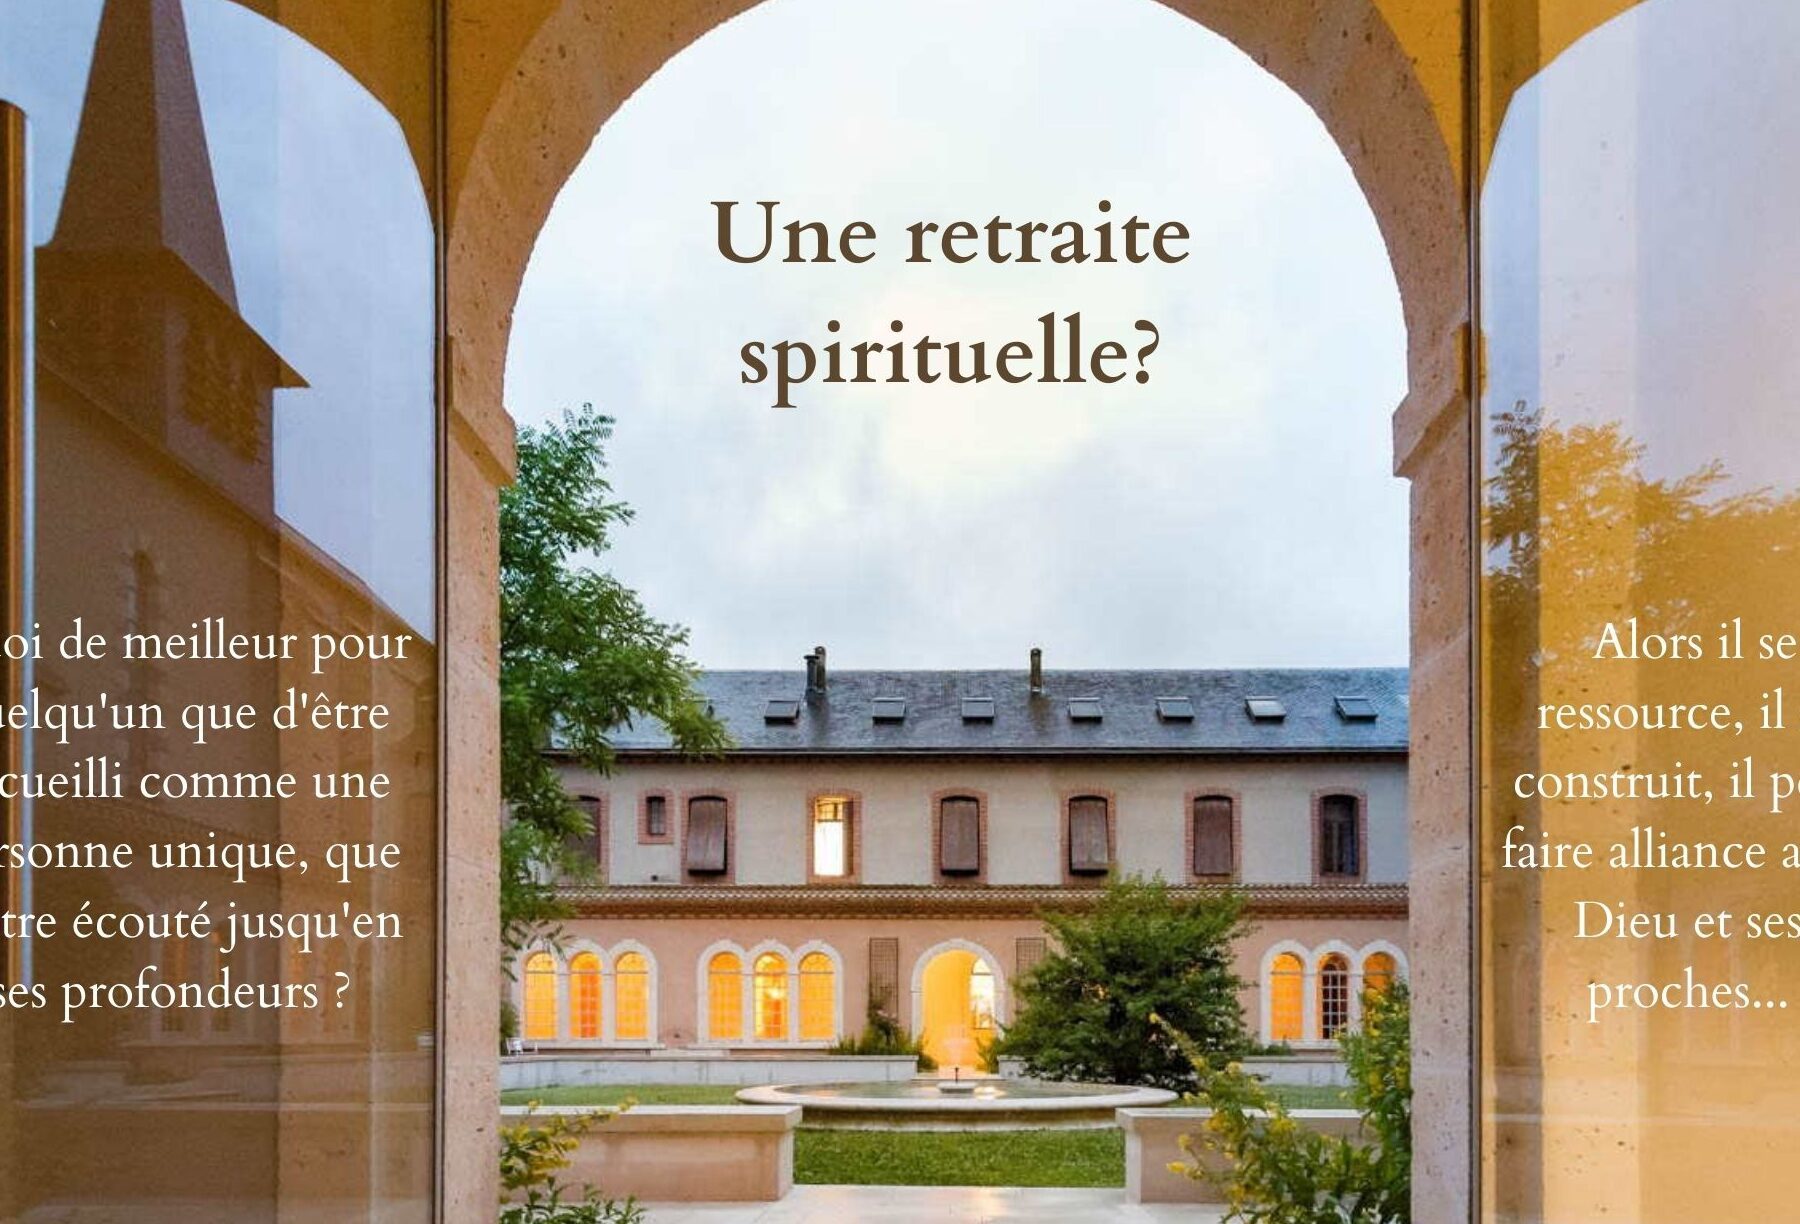 Séjour spirituel : pourquoi choisir un hôtel dans une abbaye ?